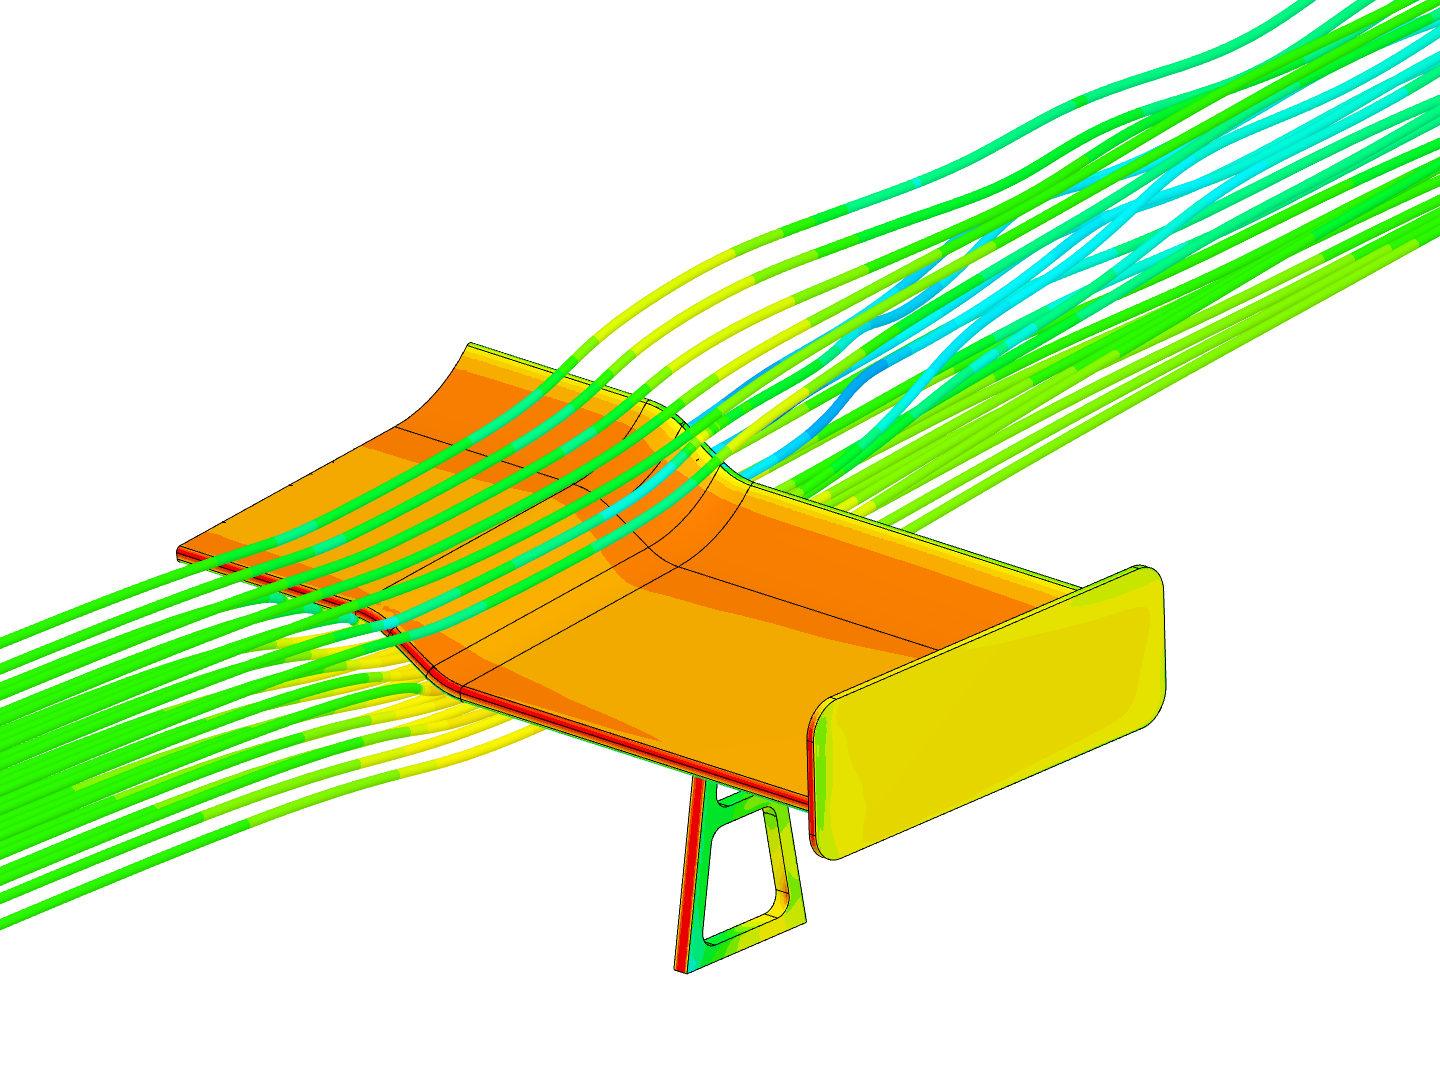 Coursera GT Car Spoiler - Airflow Simulation by Jousefm - Copy image